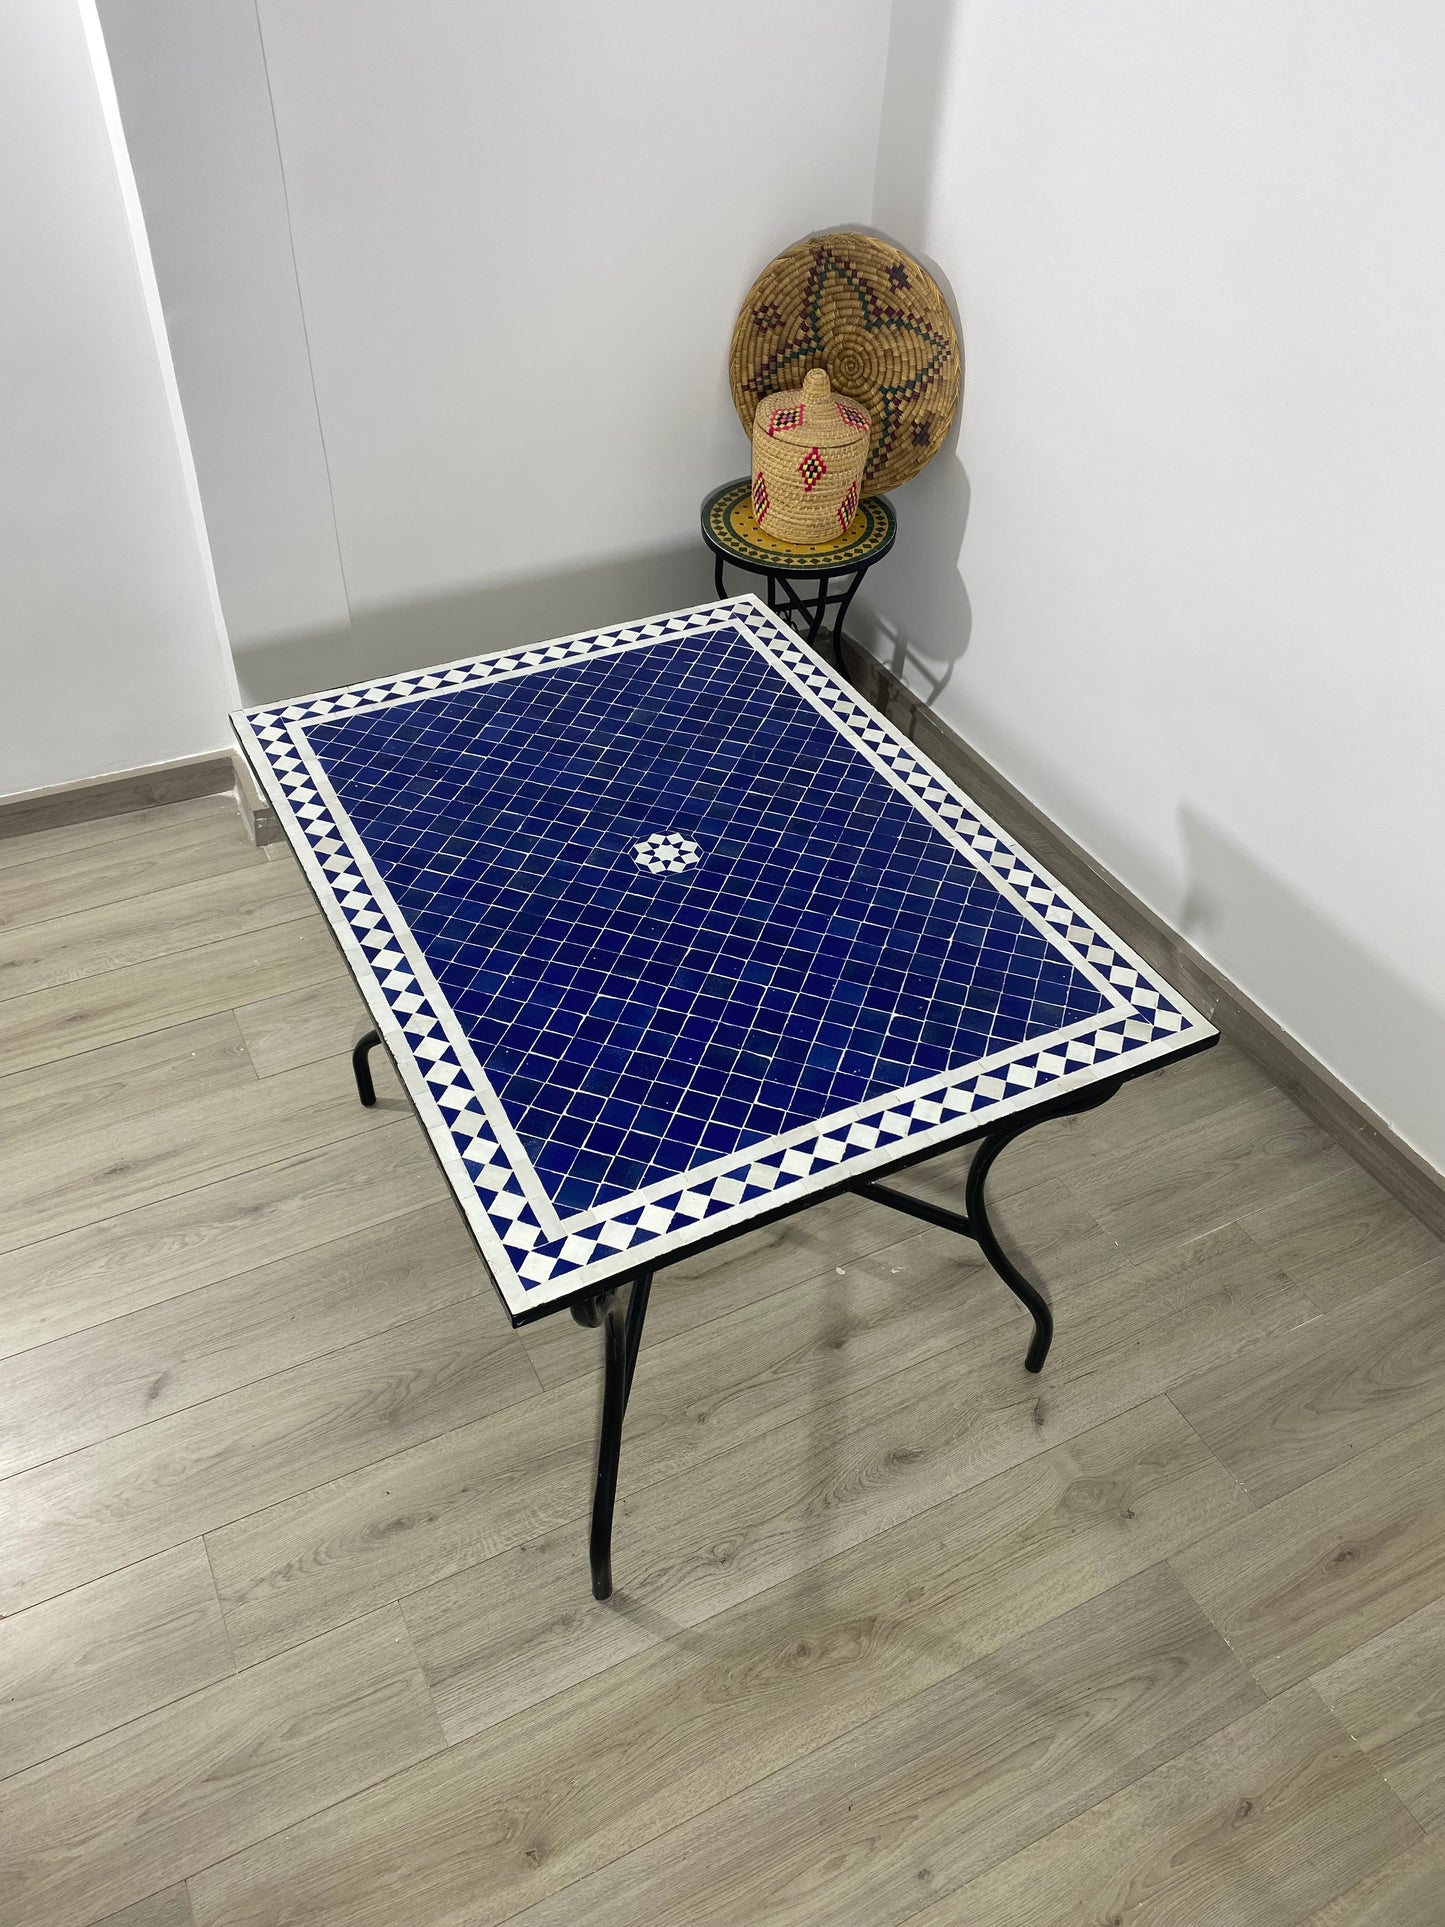 Table en mosaïque bleue marocaine pour l'extérieur et l'intérieur en carreaux de mosaïque, 100% fabriqués à la main